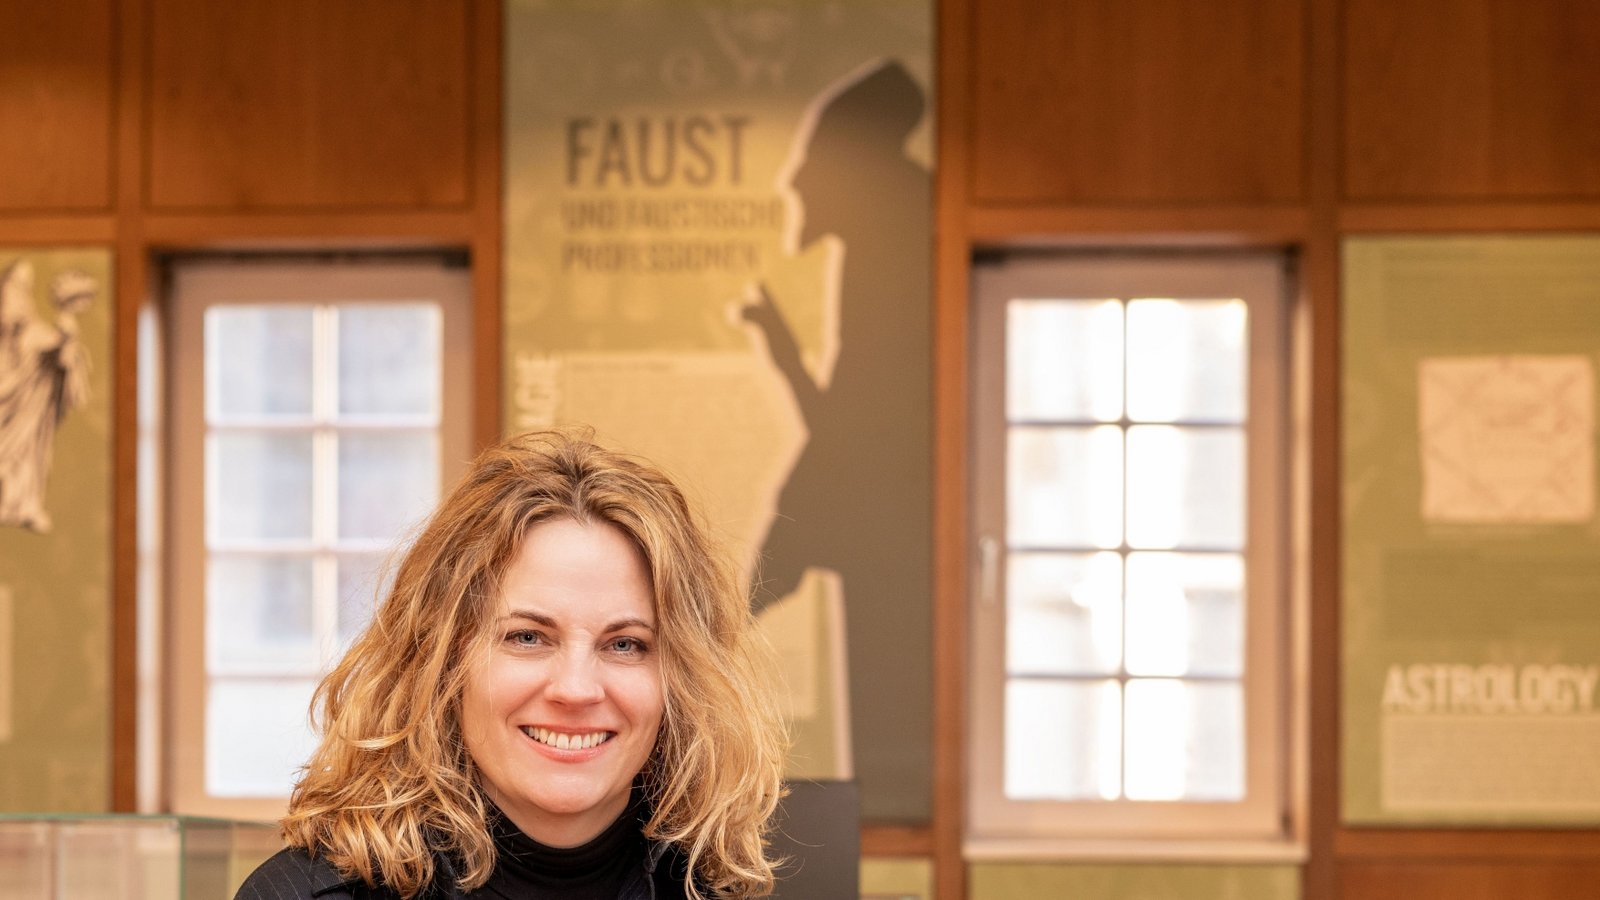 Stolz auf das gerade umgestaltete und grundlegend modernisierte Faust-Museum: Die Leiterin Denise Roth im ersten Ausstellungsraum im Erdgeschoss des Museums, in dem die Besucher ihre Entdeckungsreise auf den Spuren Fausts in Knittlingen beginnen.